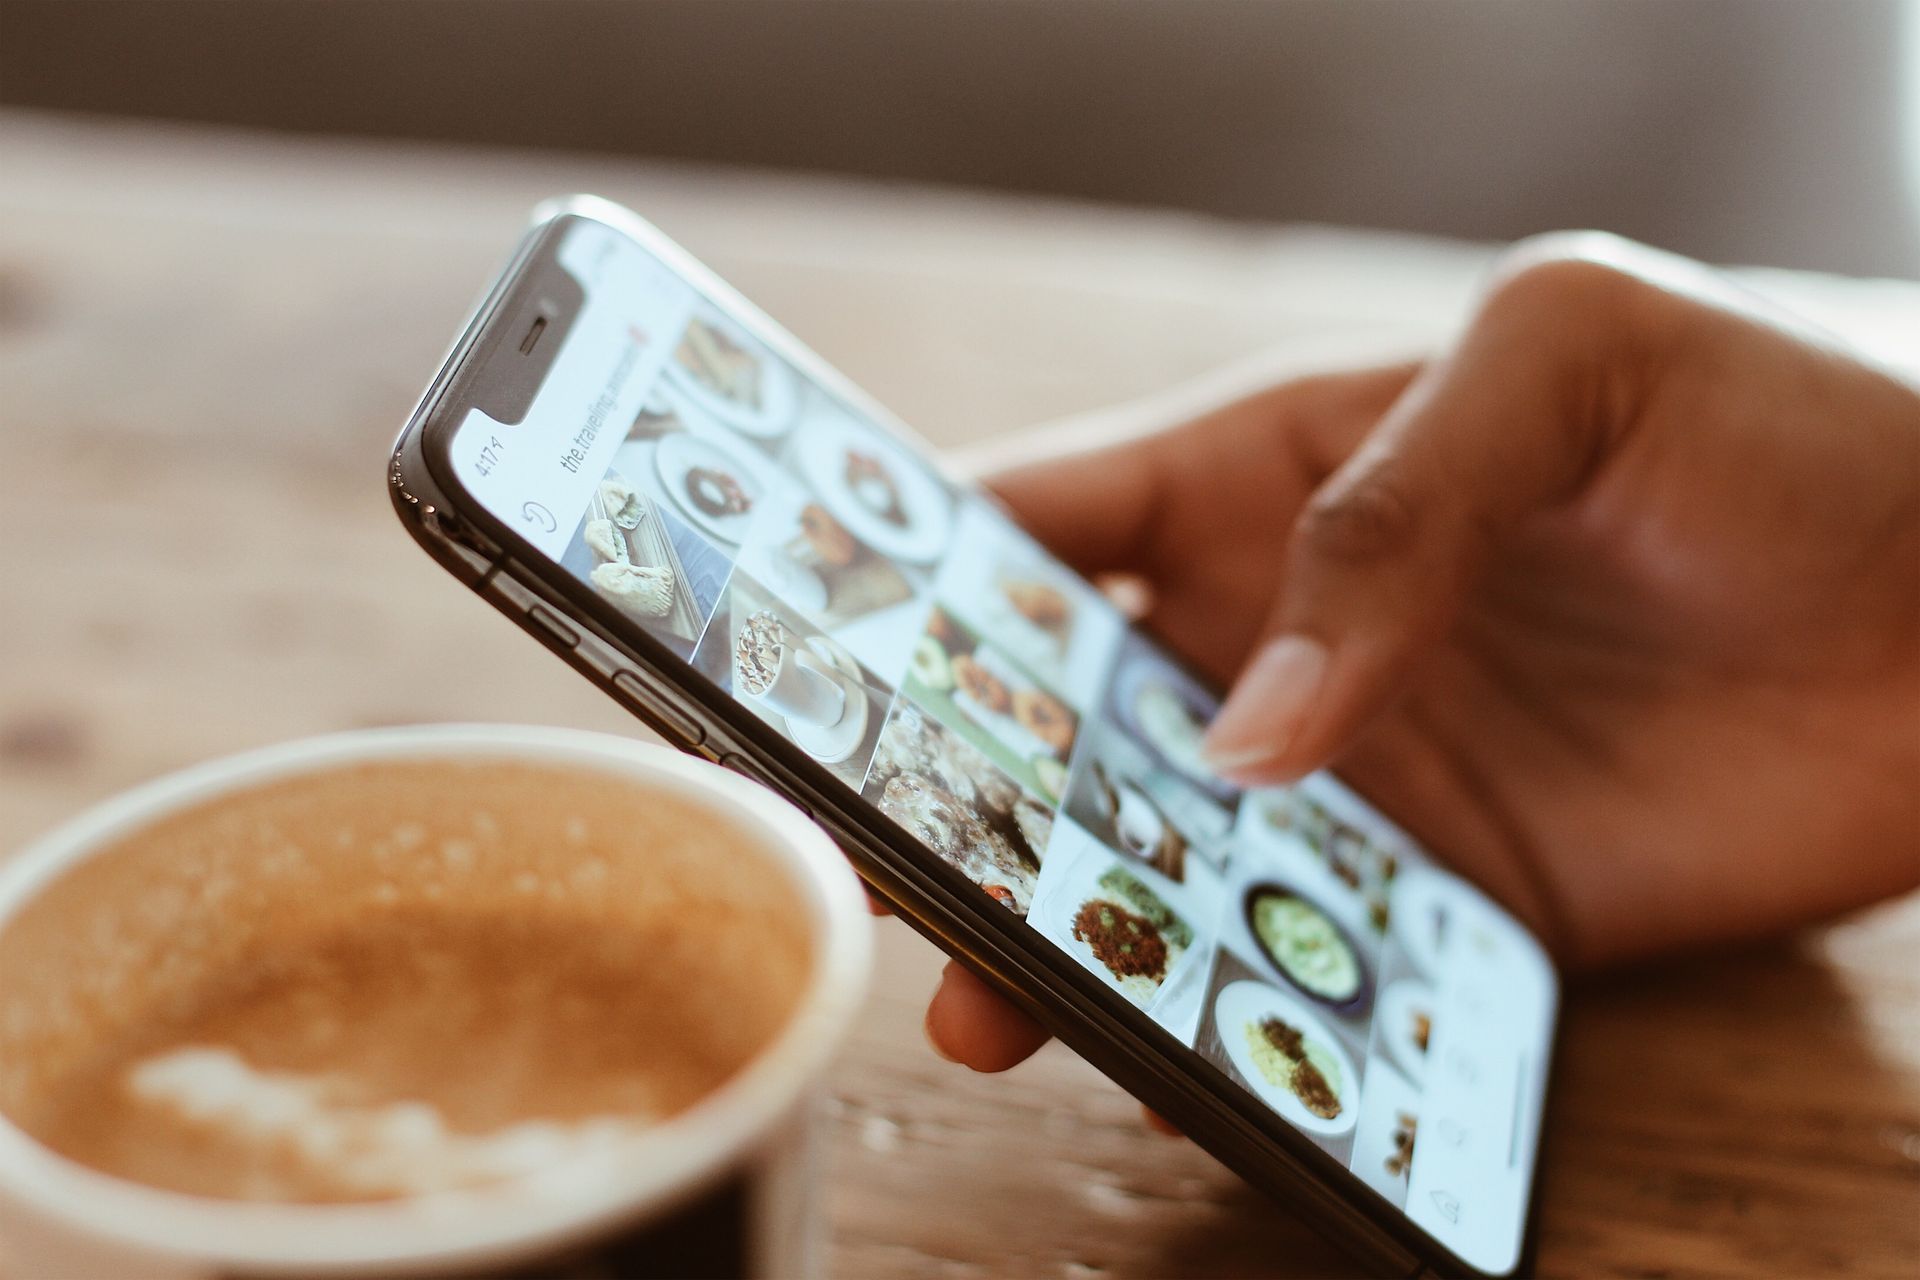 Das Zoom-Problem des Instagram-Profilbilds wird mit der neuen Funktion behoben